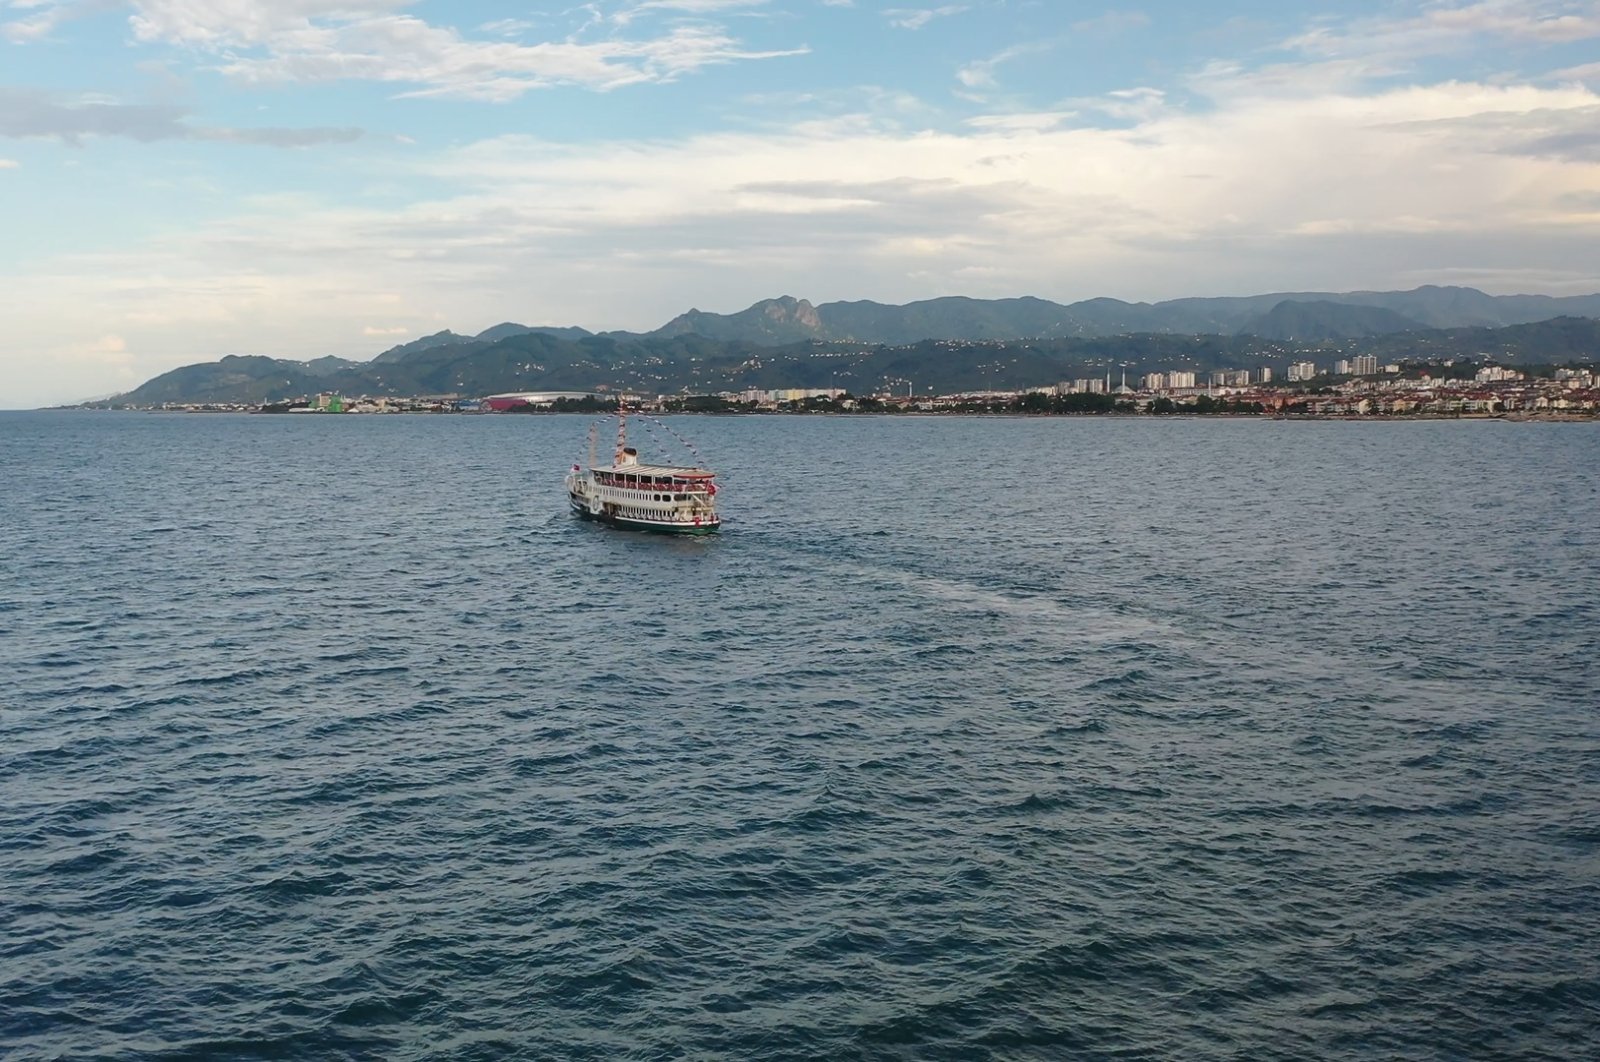 Wilayah Laut Hitam Türkiye menetapkan tempat menyelam untuk meningkatkan pariwisata